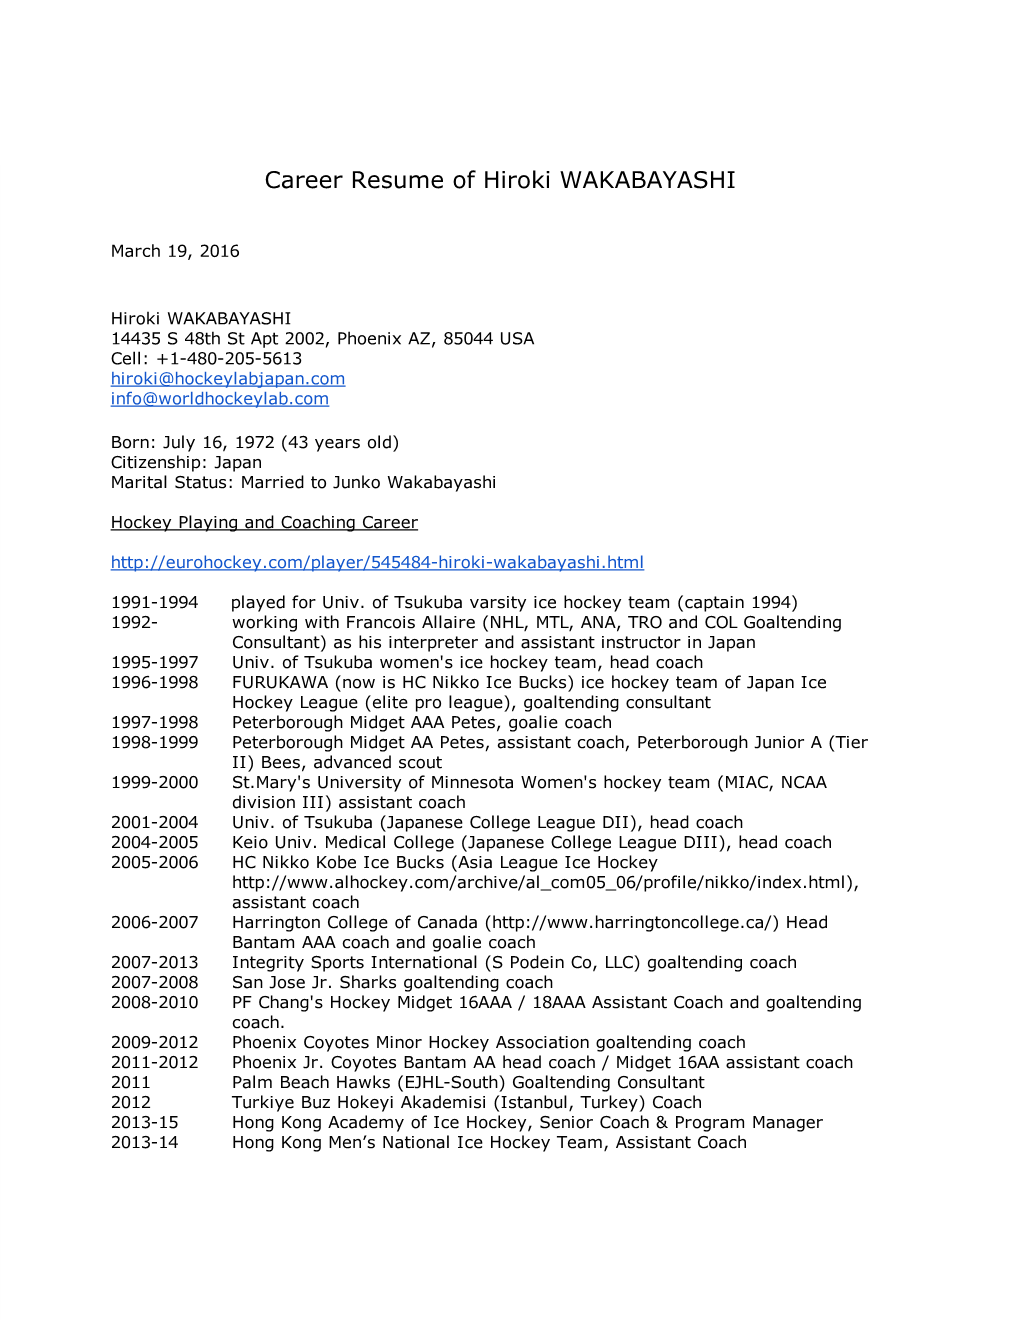 Career Resume of Hiroki WAKABAYASHI